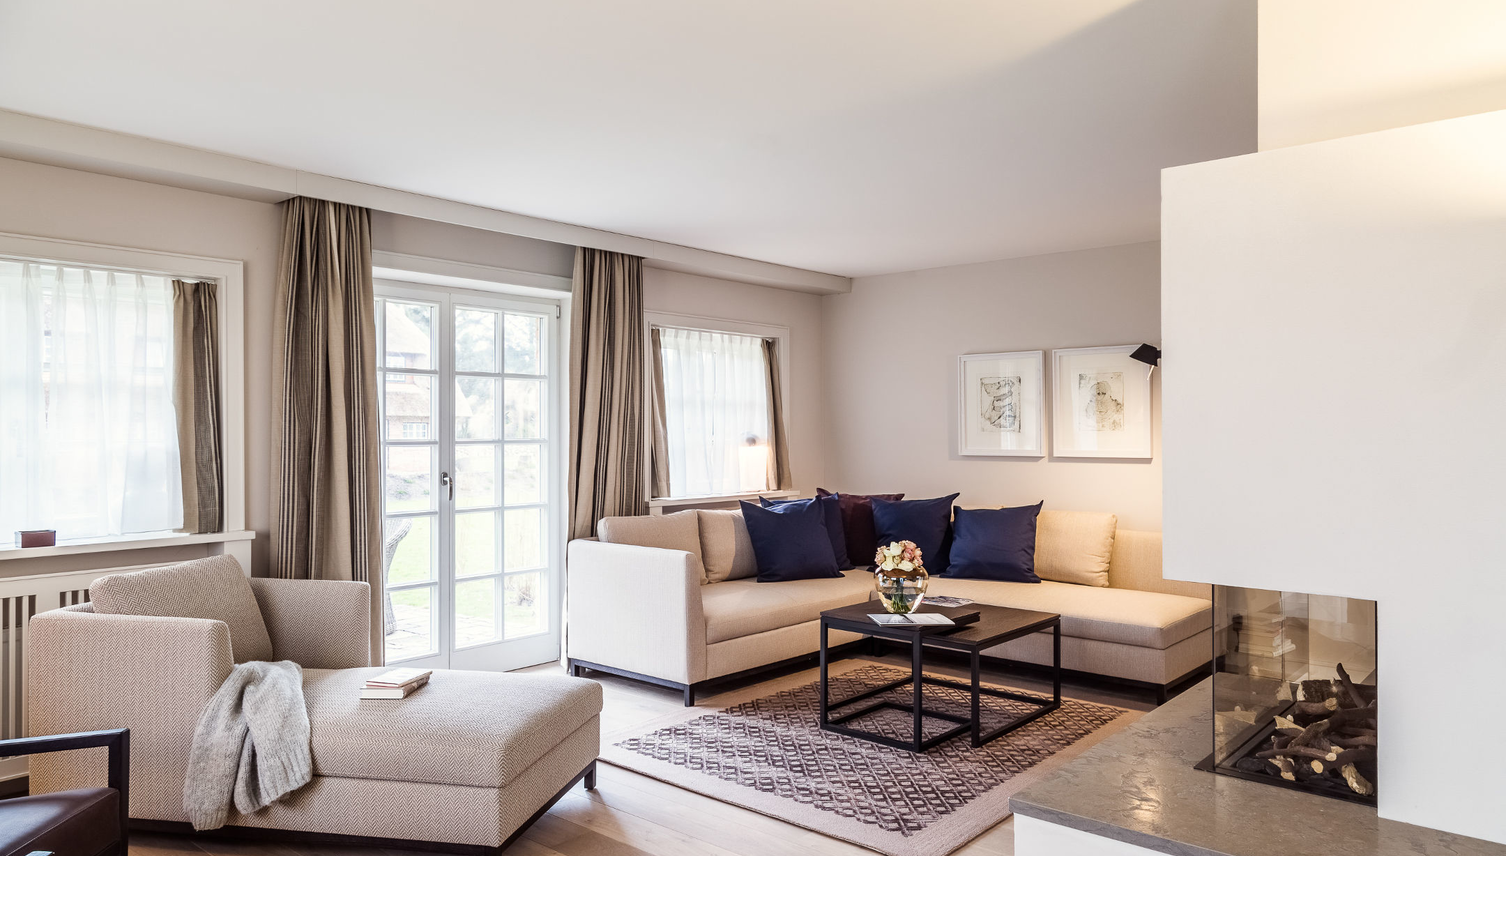 Blick auf das Wohnzimmer mit Kamin im Hausteil Severin*s im Severin*s Resort & Spa auf Sylt